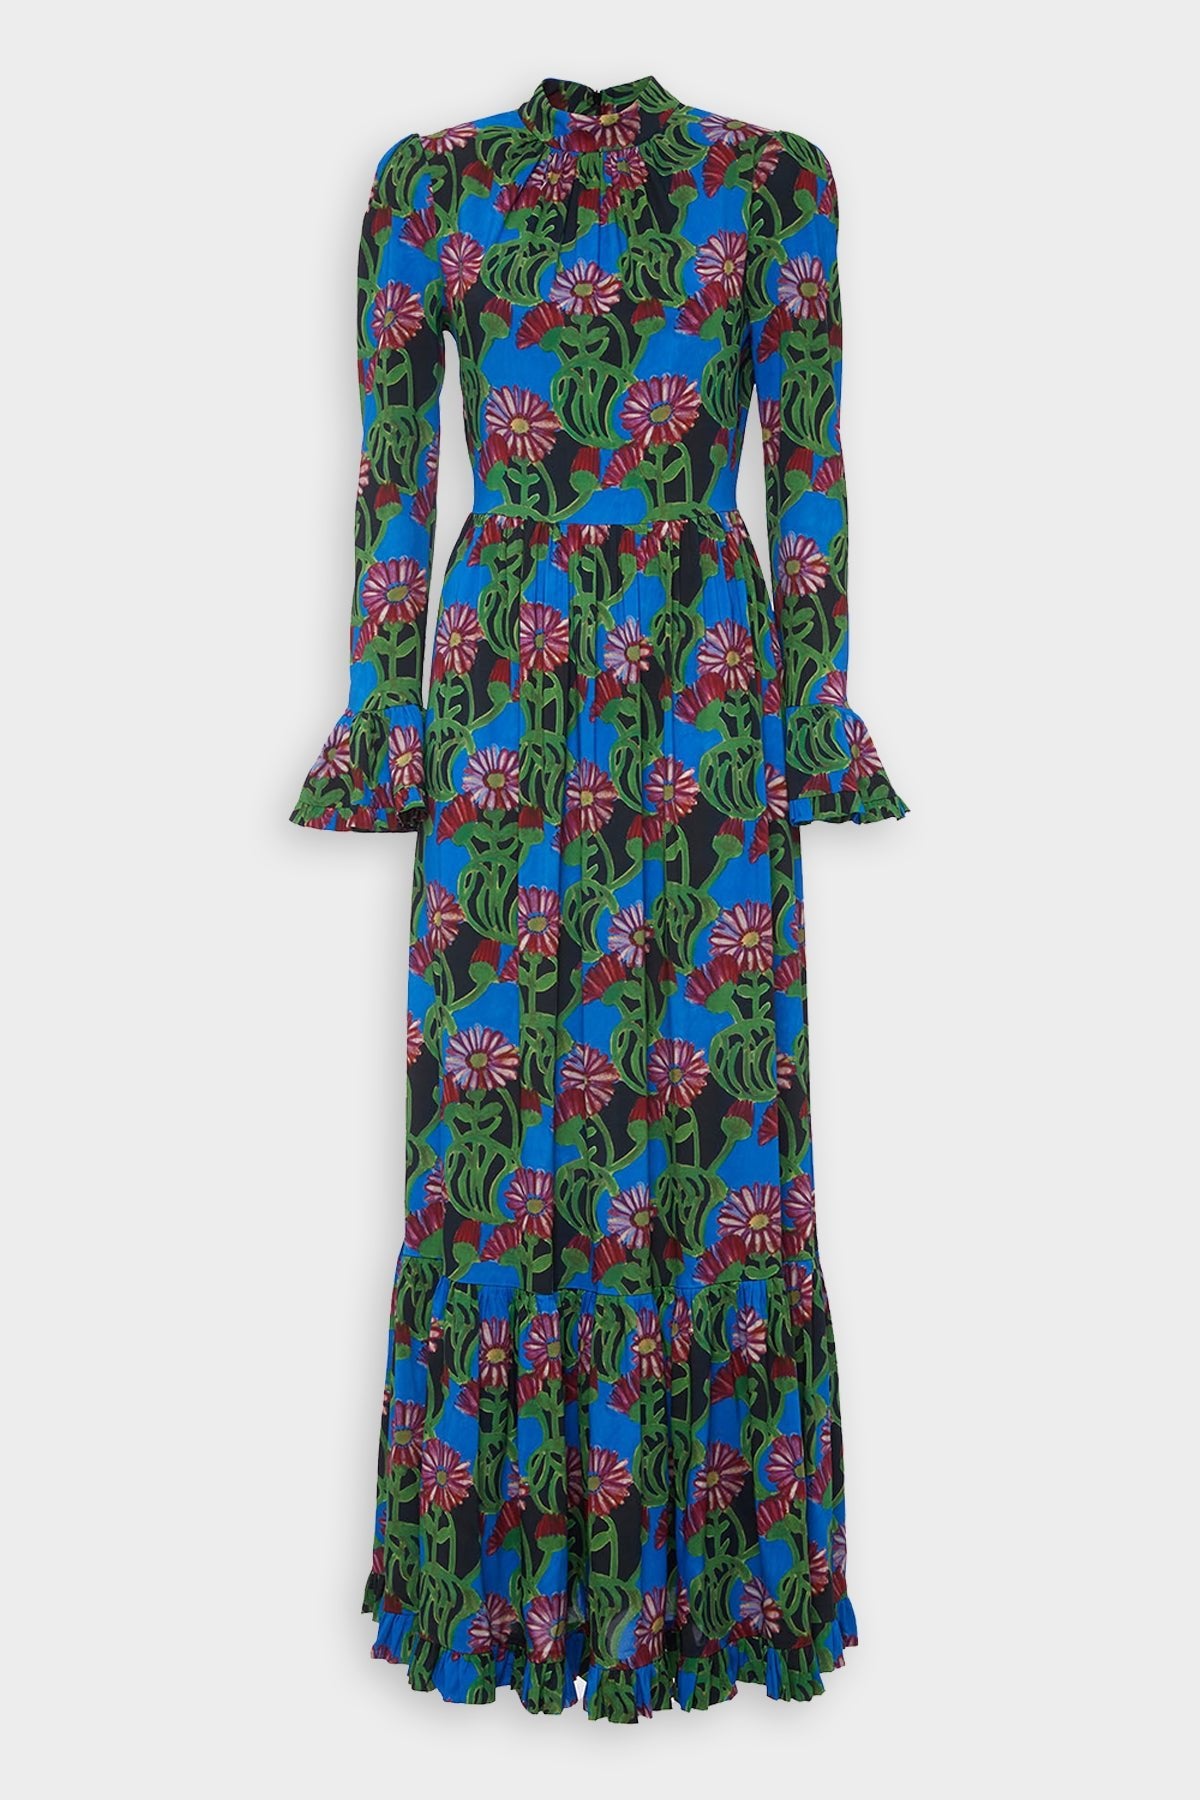 Visconti Dress in Gerber - shop-olivia.com